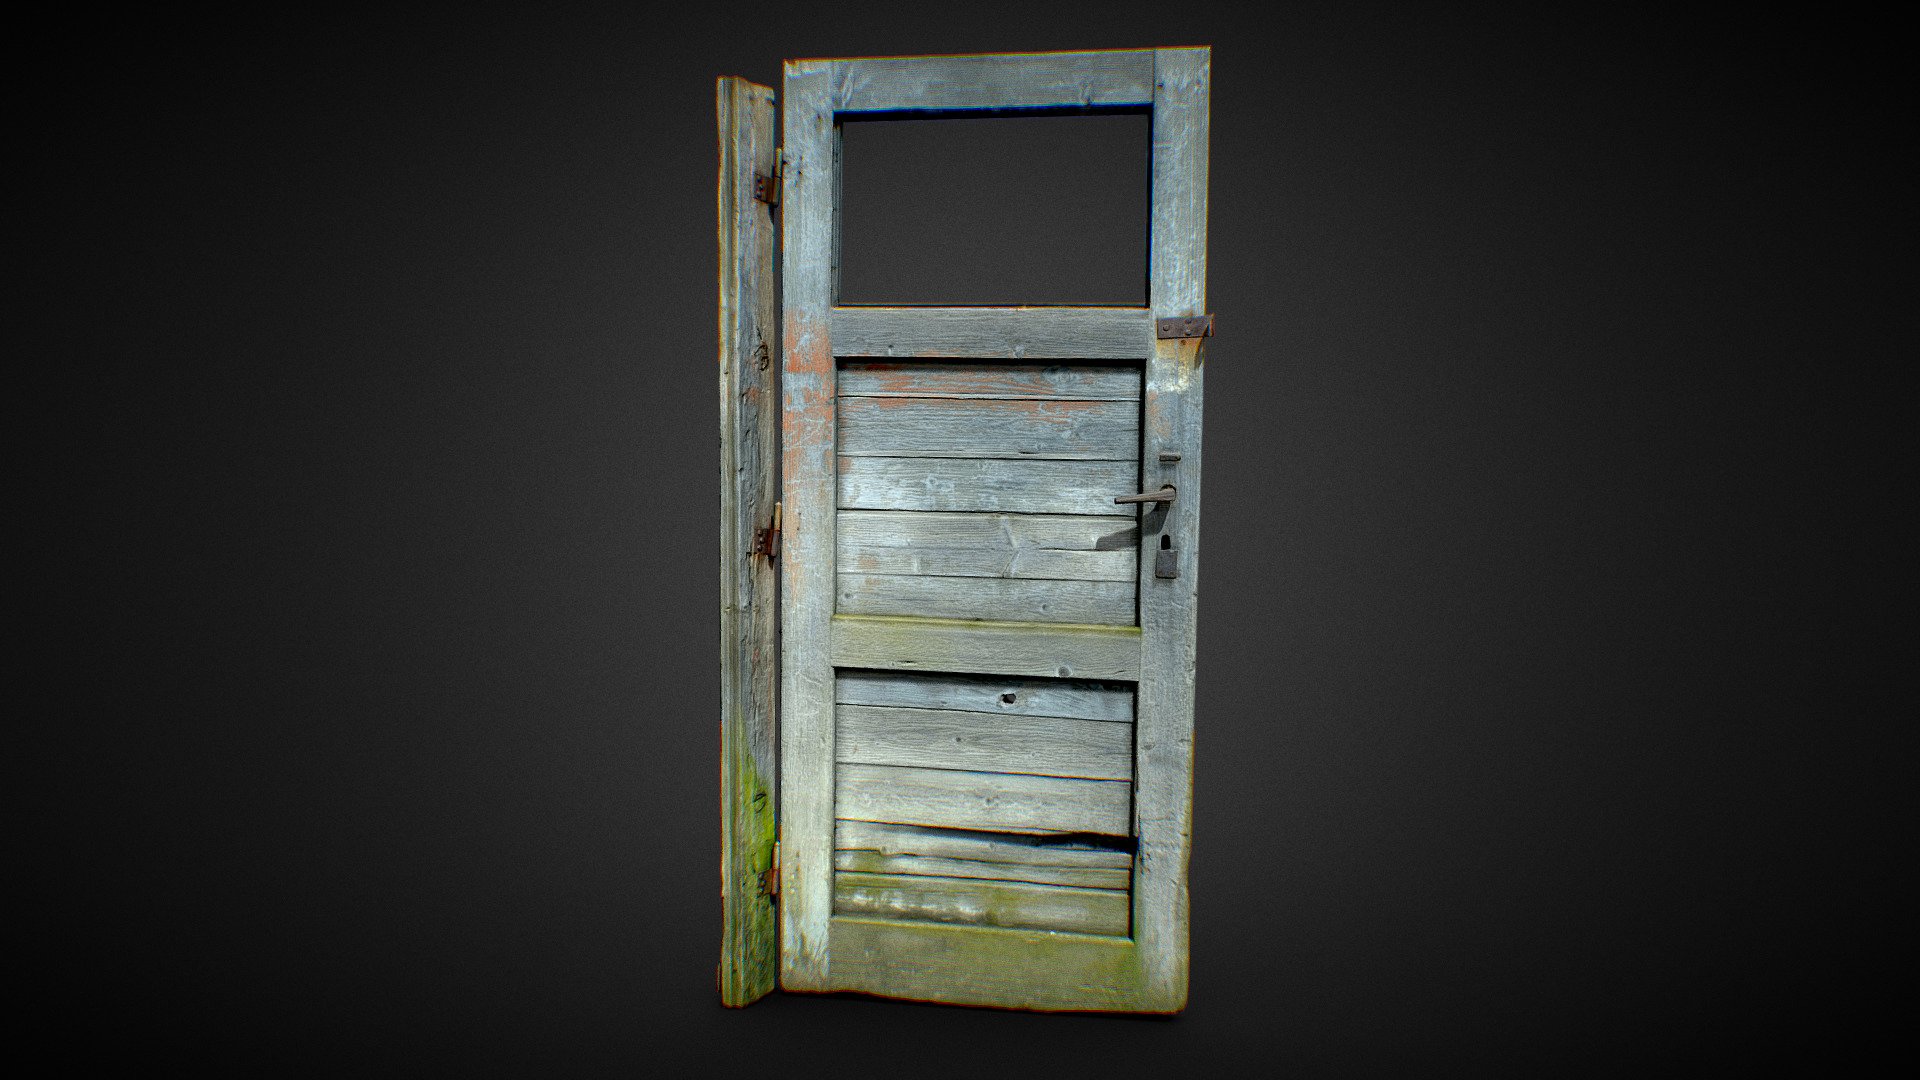 Photogrammetry Wood Door Old 3D Scan
8K textures - Wood Door Old 3D Scan - Buy Royalty Free 3D model by grafi (@zdenkoroman) 3d model